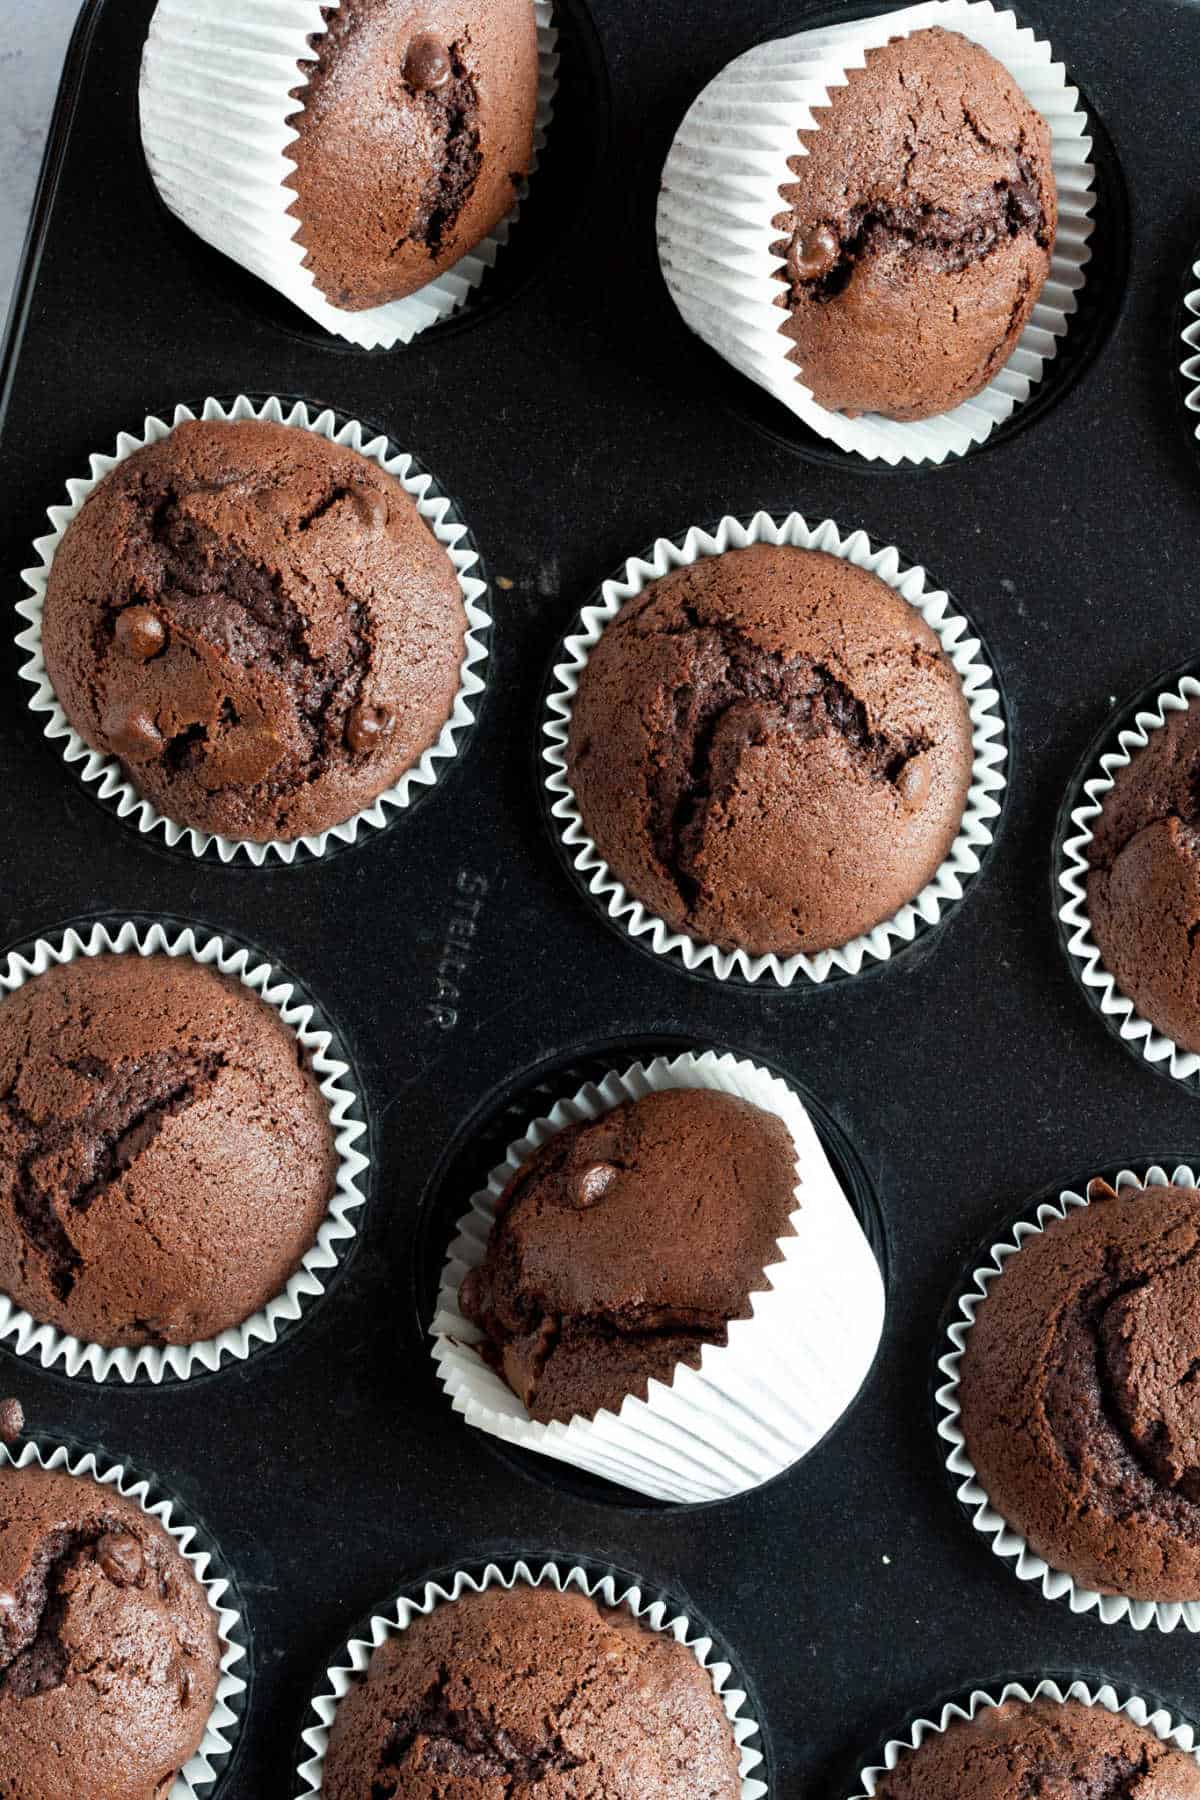 Chocolate nutella muffins in a muffin tin.